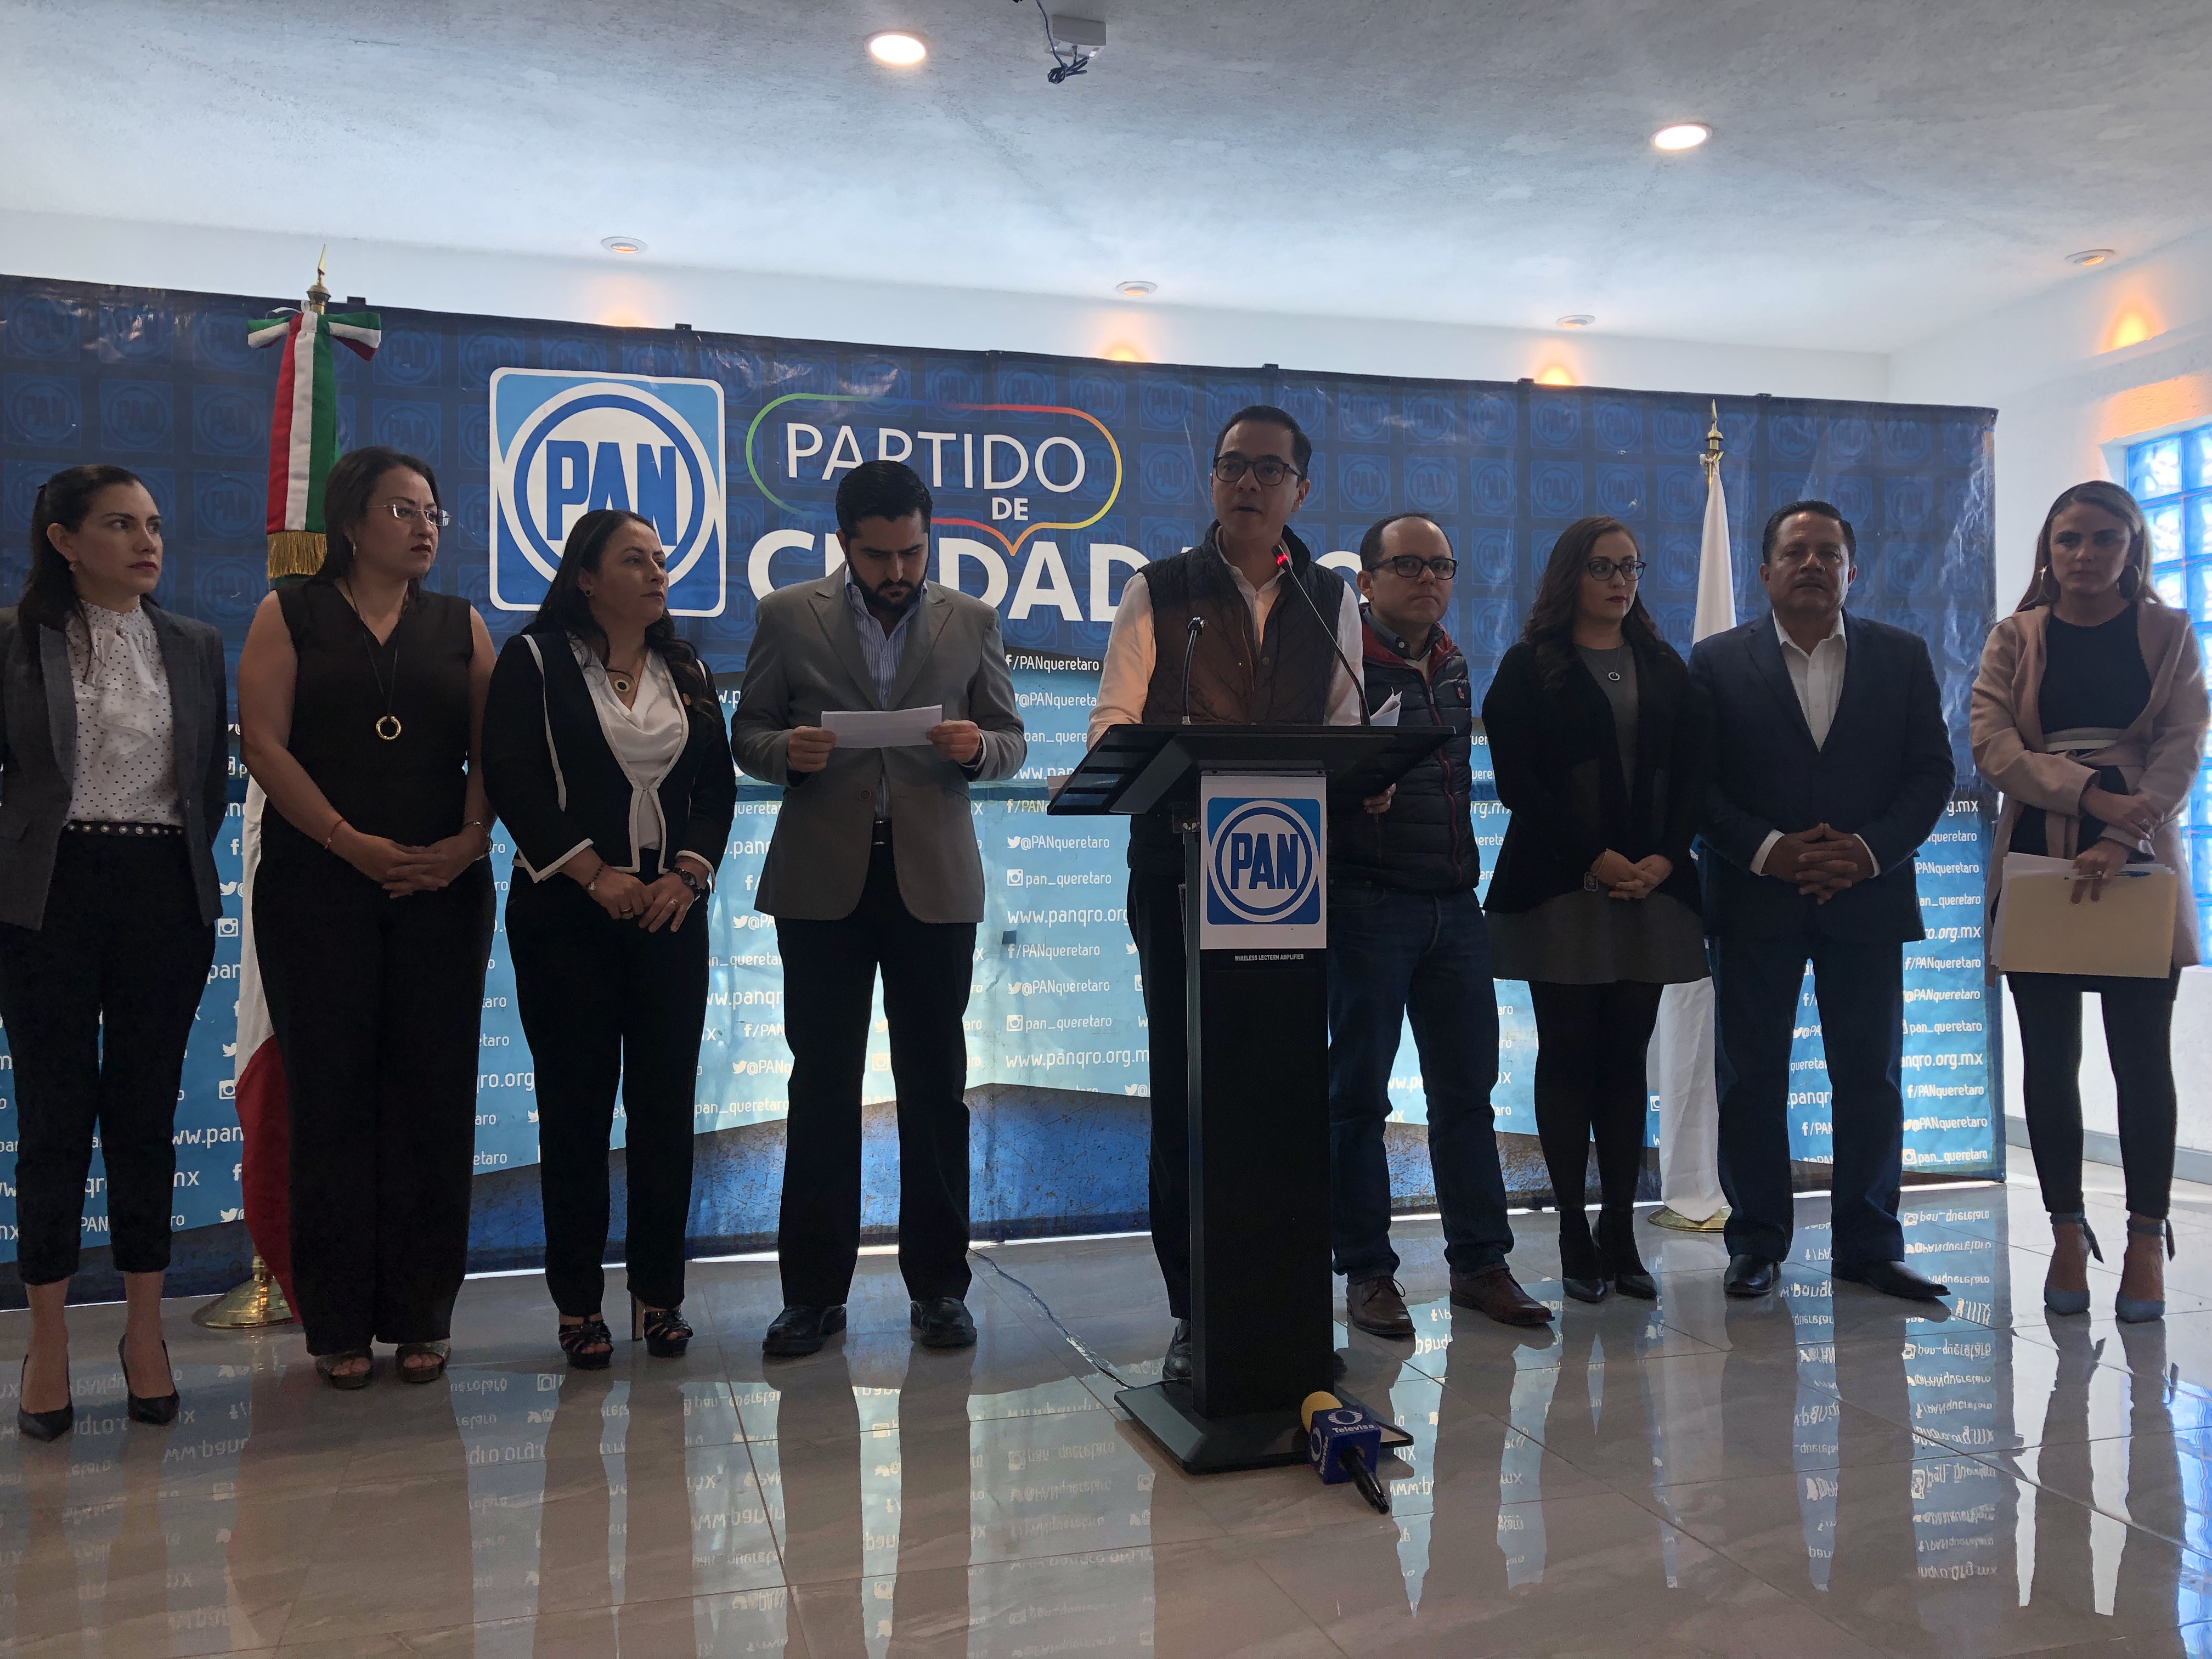  Buscan diputados del PAN reforma para plasmar que Querétaro es “libre y soberano”